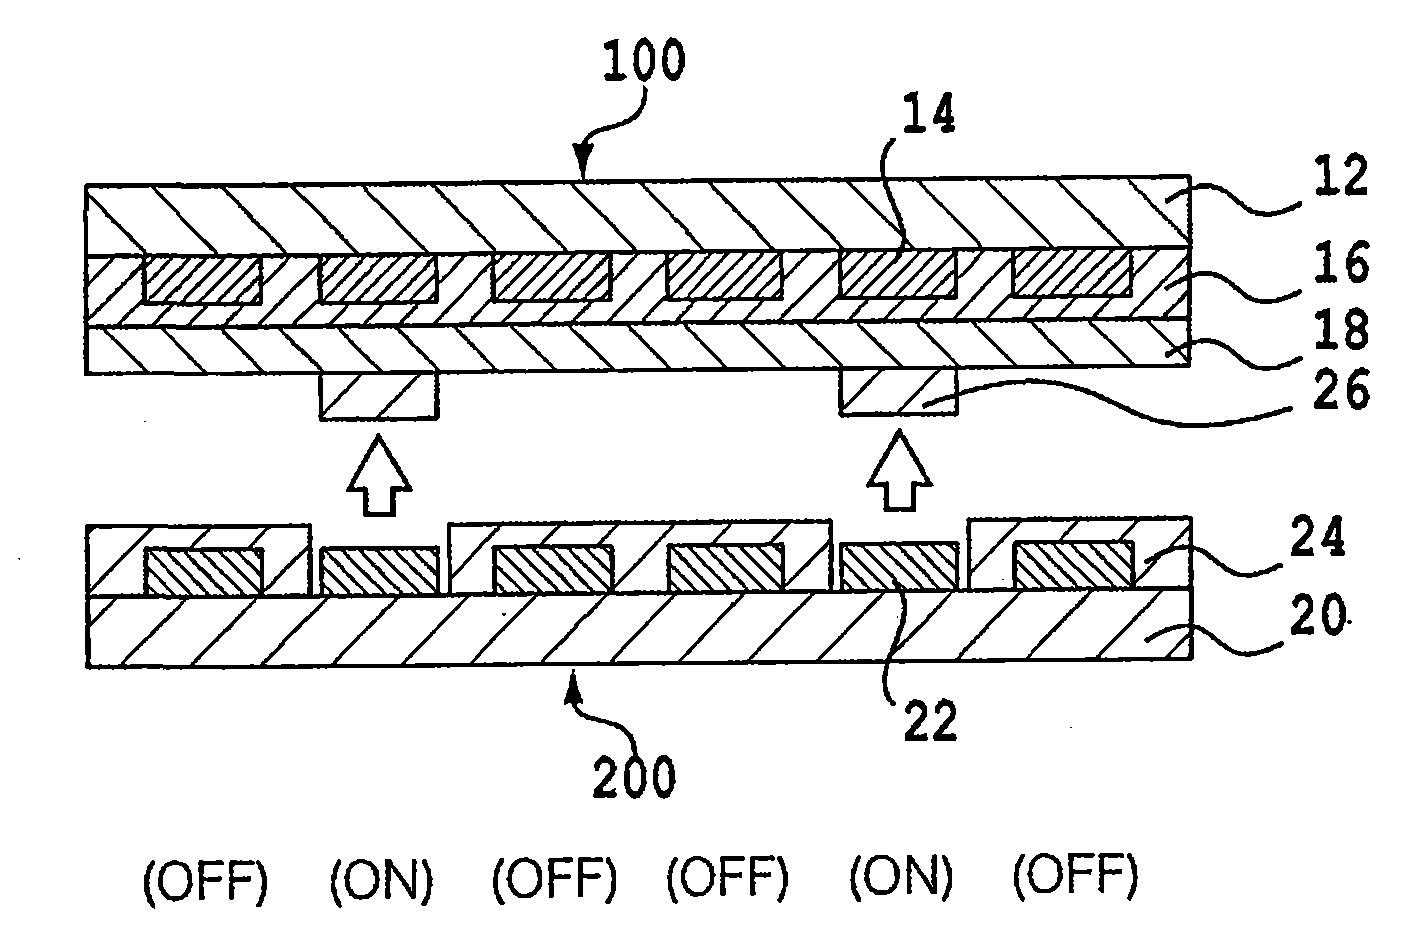 Method for manufacturing patterned vapor-deposited film